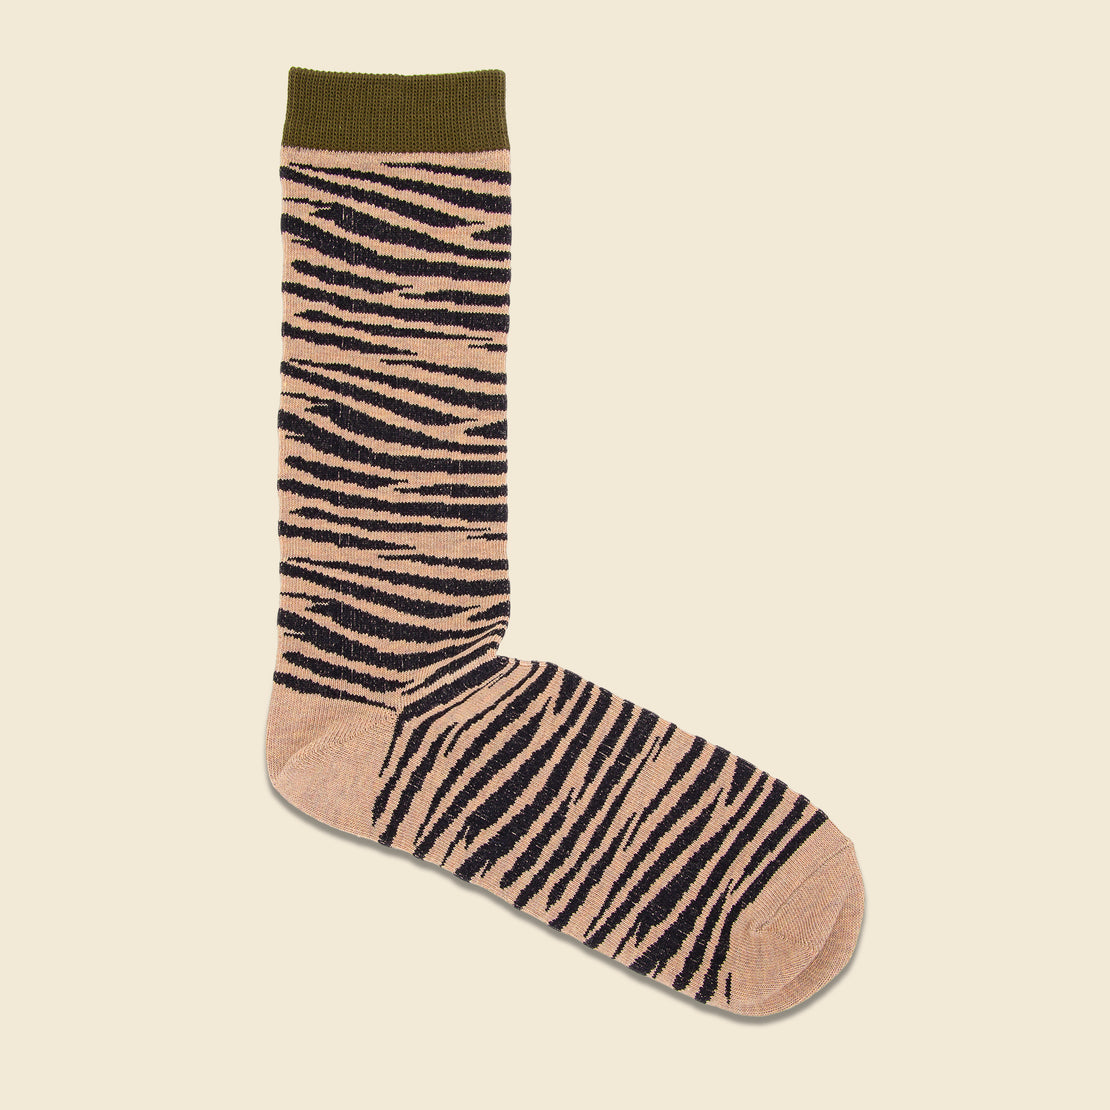 Anonymous Ism Crew Sock - Olive Zebra